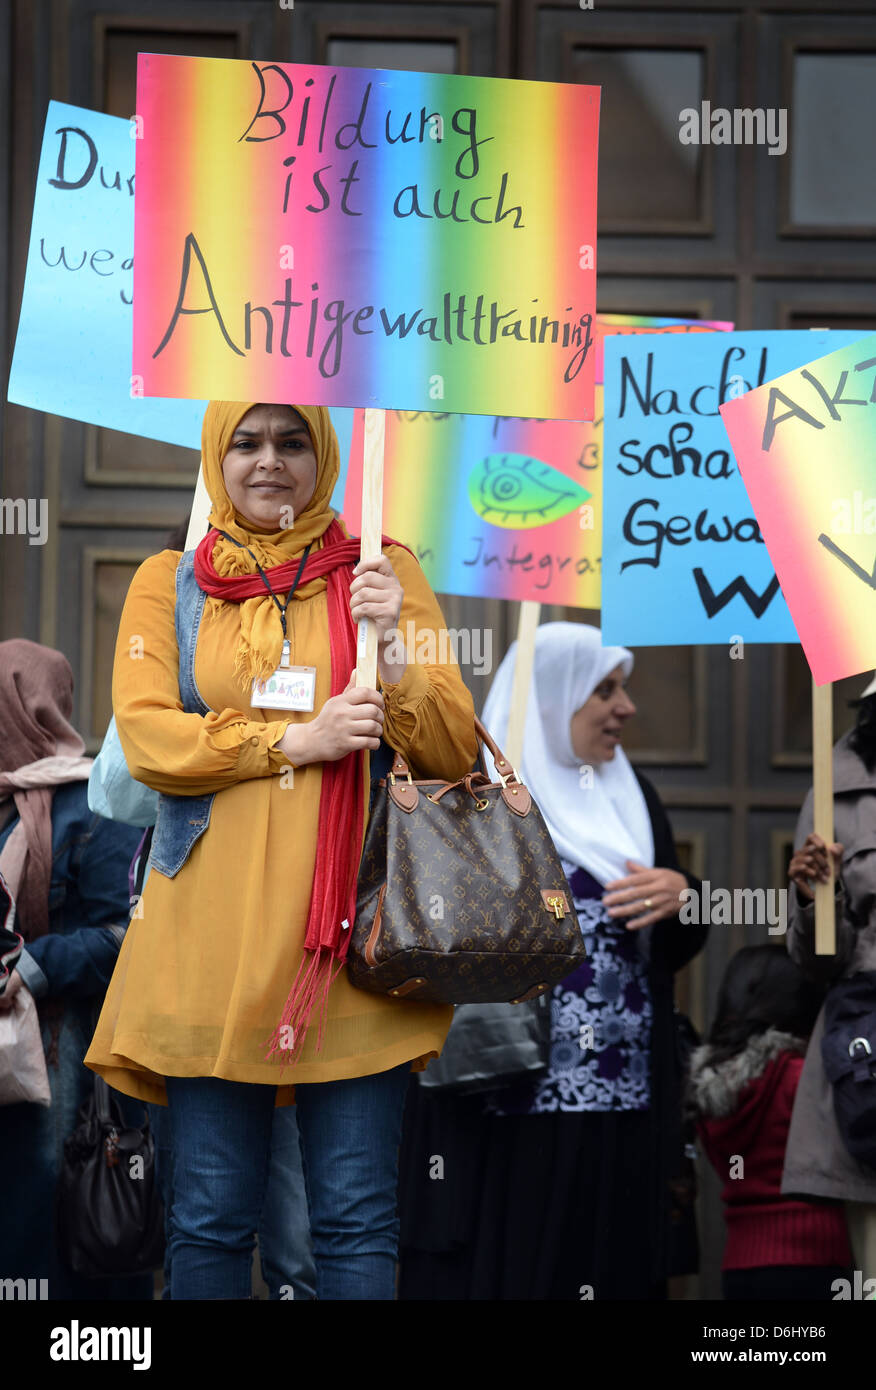 Berlin, Allemagne, les immigrants manifestent devant l'hôtel de ville Neukoelln contre la violence Banque D'Images